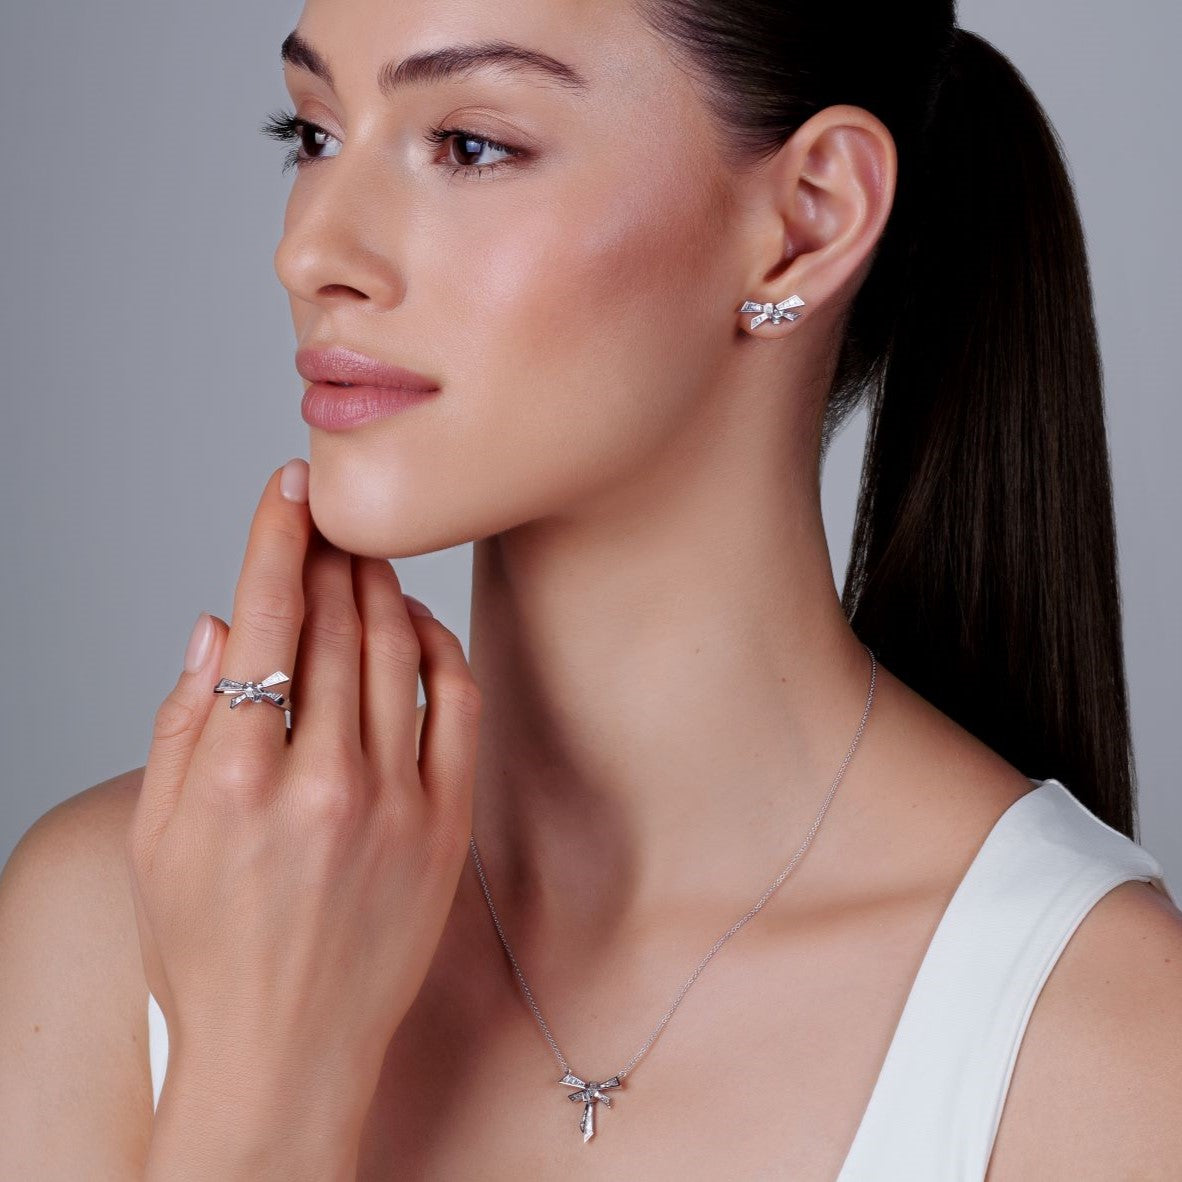 TAINIA Diamond Bow Necklace